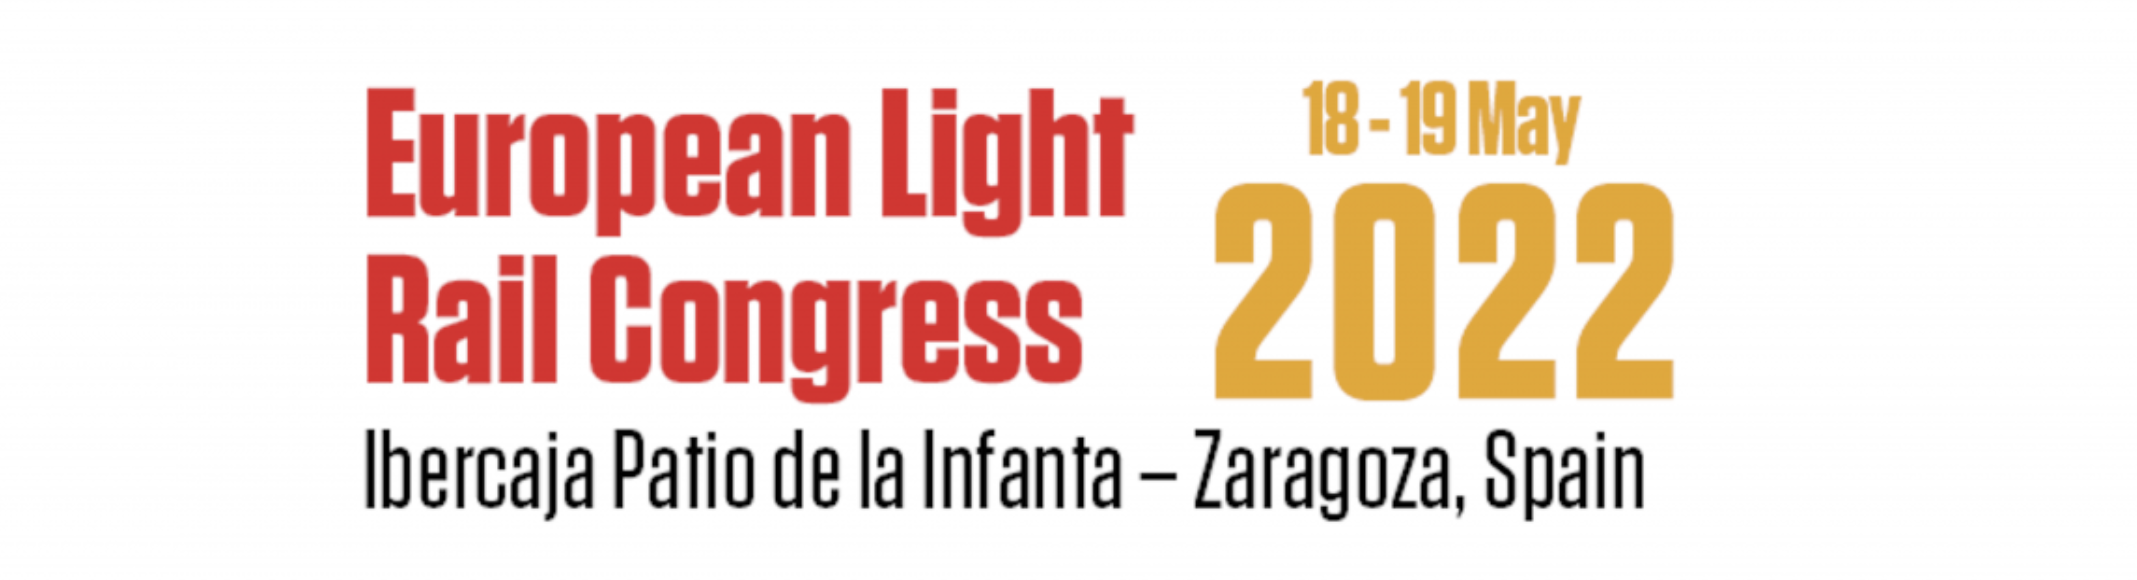 European Light Rail Congress banner